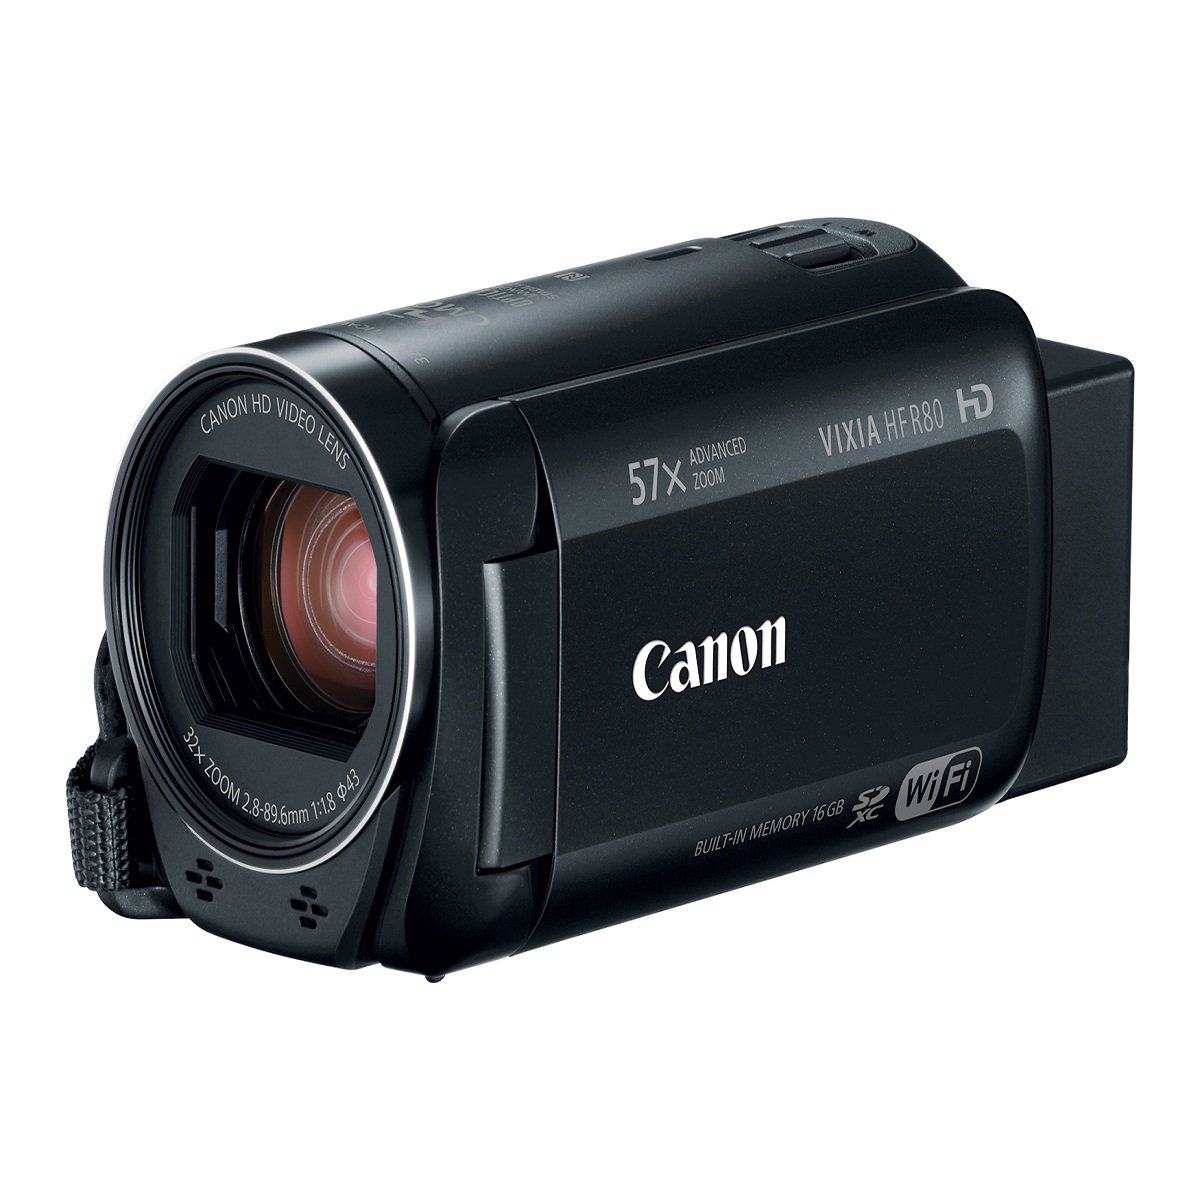 Videocamara Canon Vixia Hfr80 B